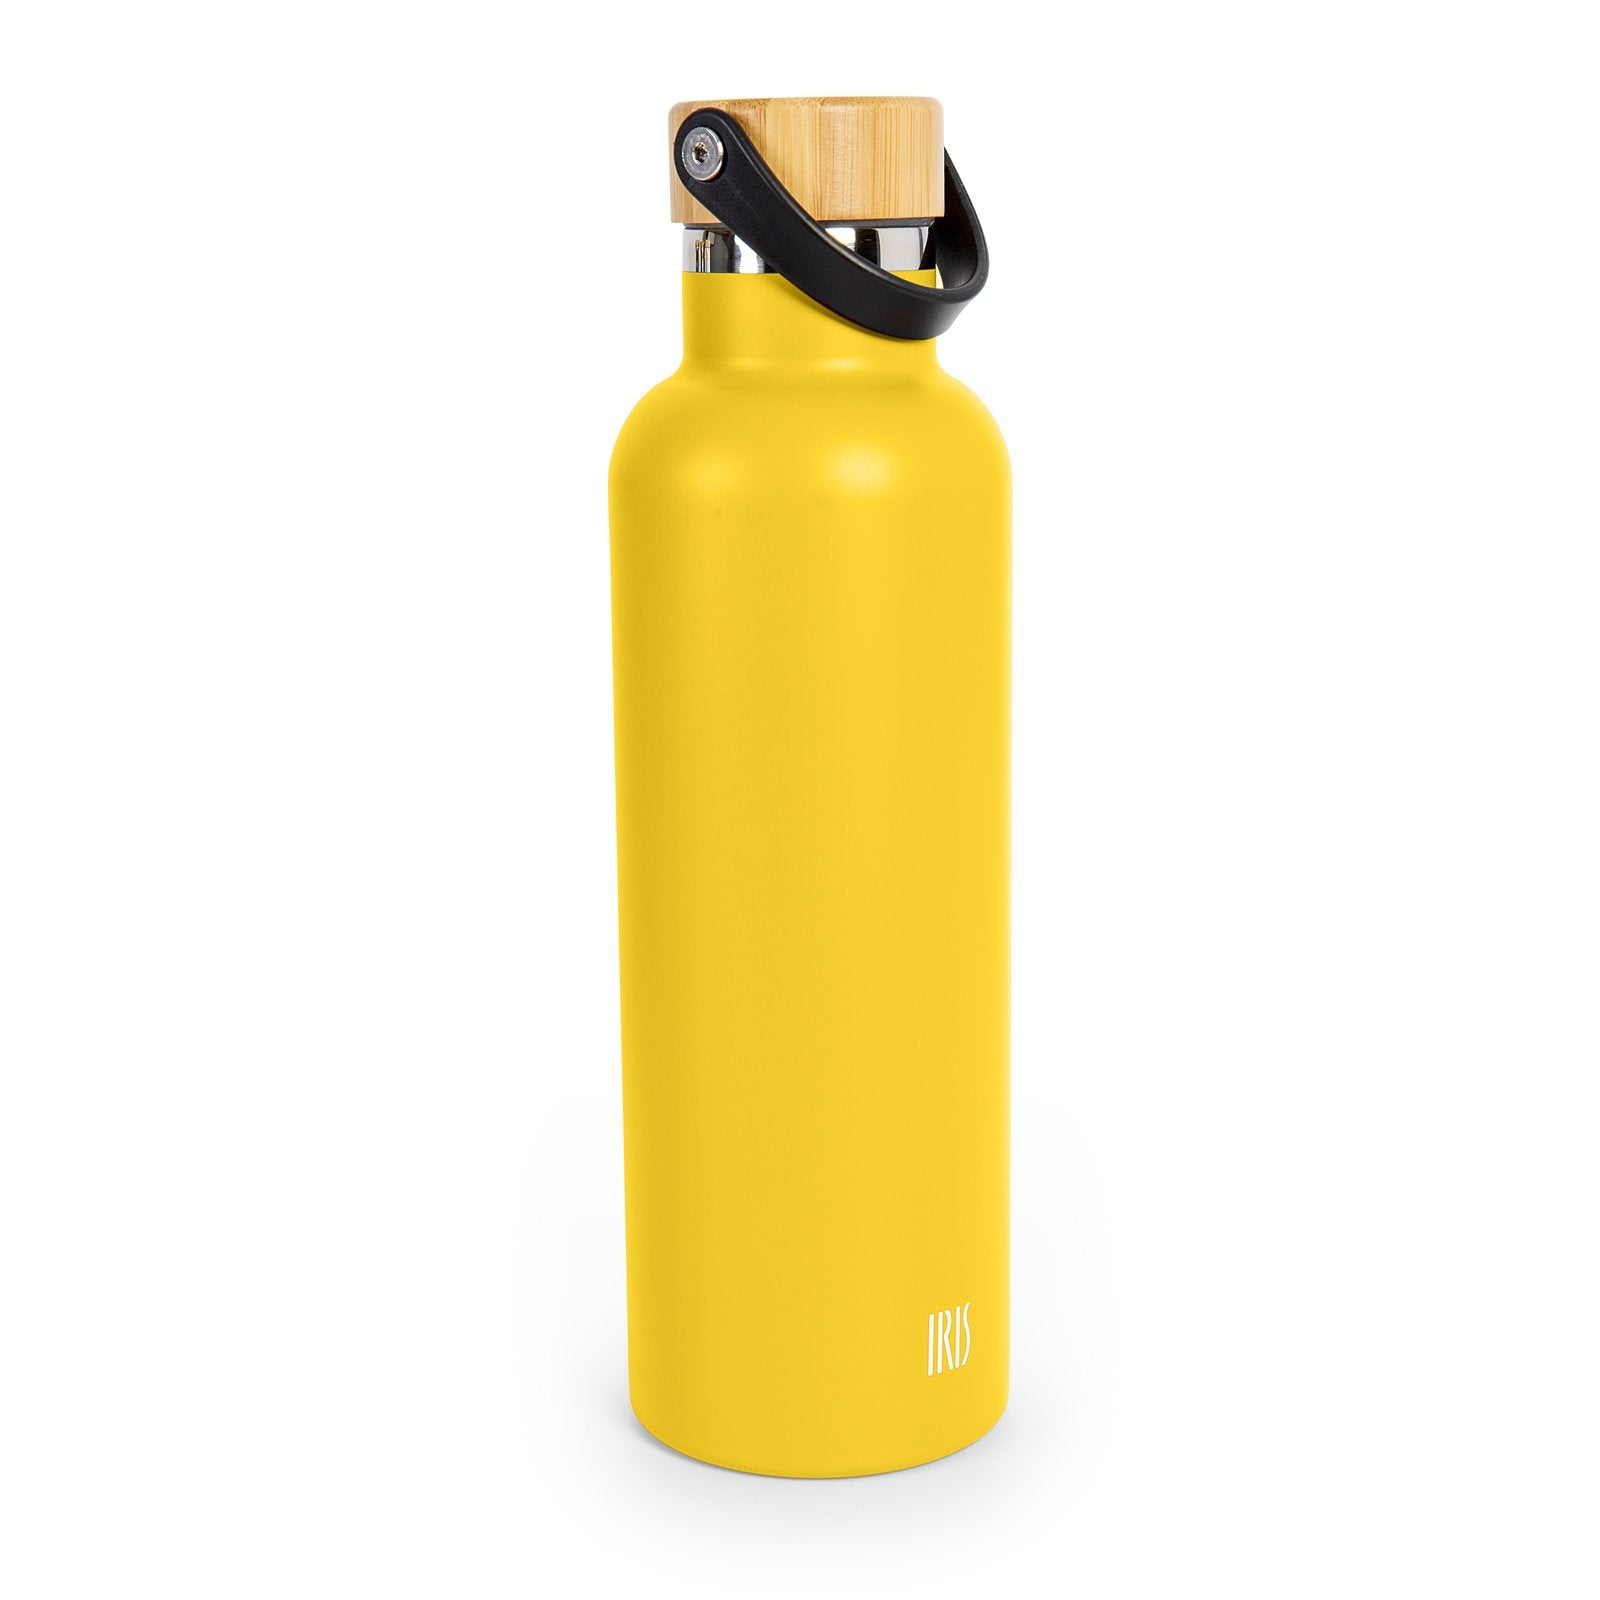 IRIS 9811-IA - Botella Térmica en Acero Inoxidable de 0.75L Amarilla, Colección BALI